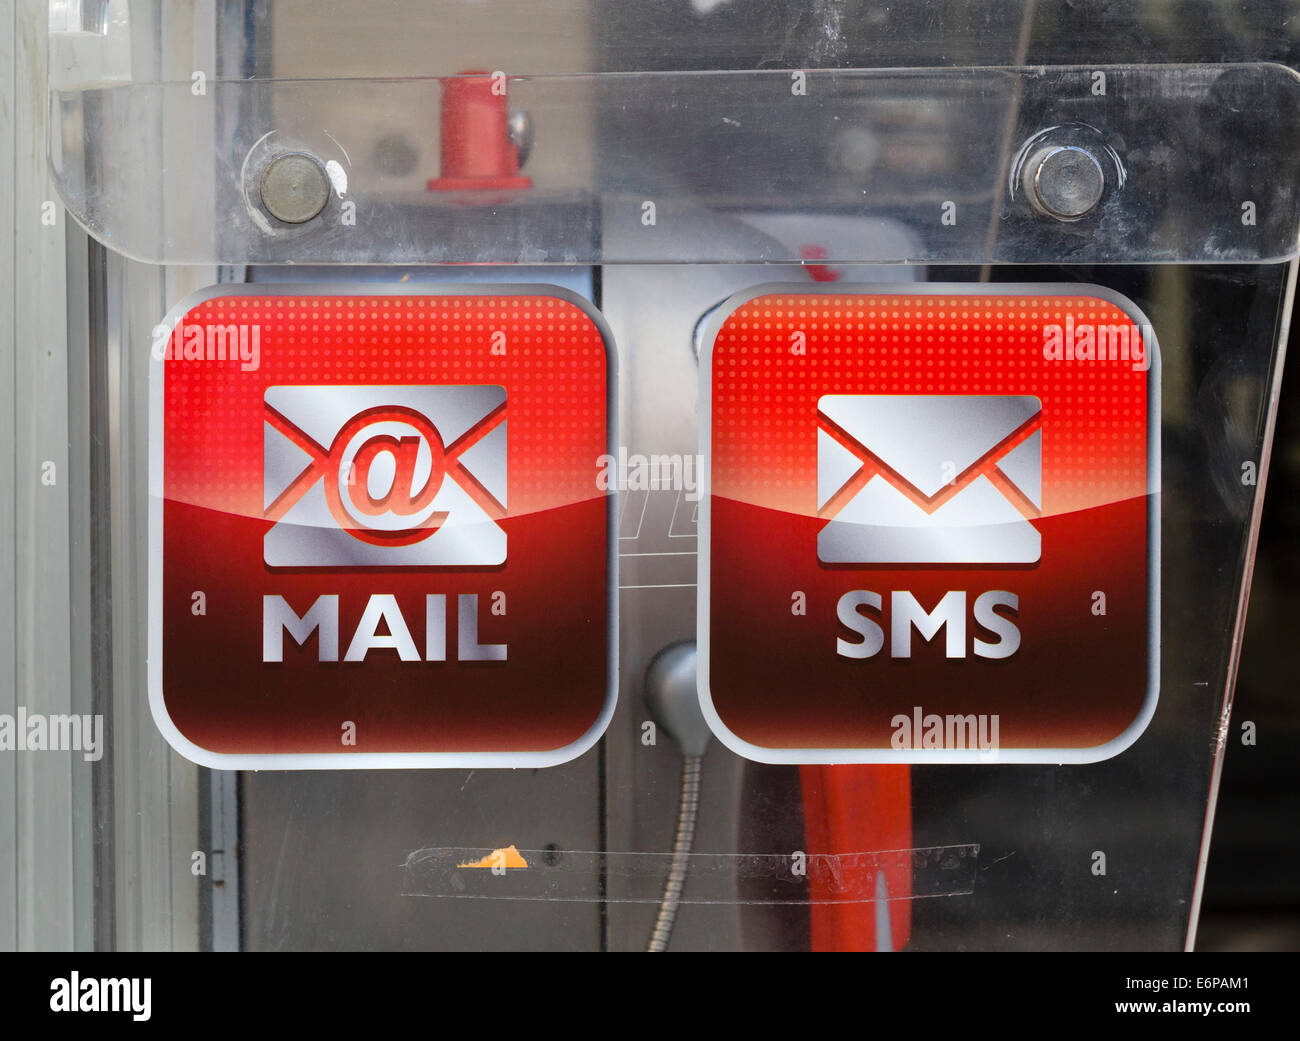 Telefonzelle mit e-Mail- und Sms-Services, Reggio Emilia (Reggio Emilia), Emilia Romagna, Italien Stockfoto